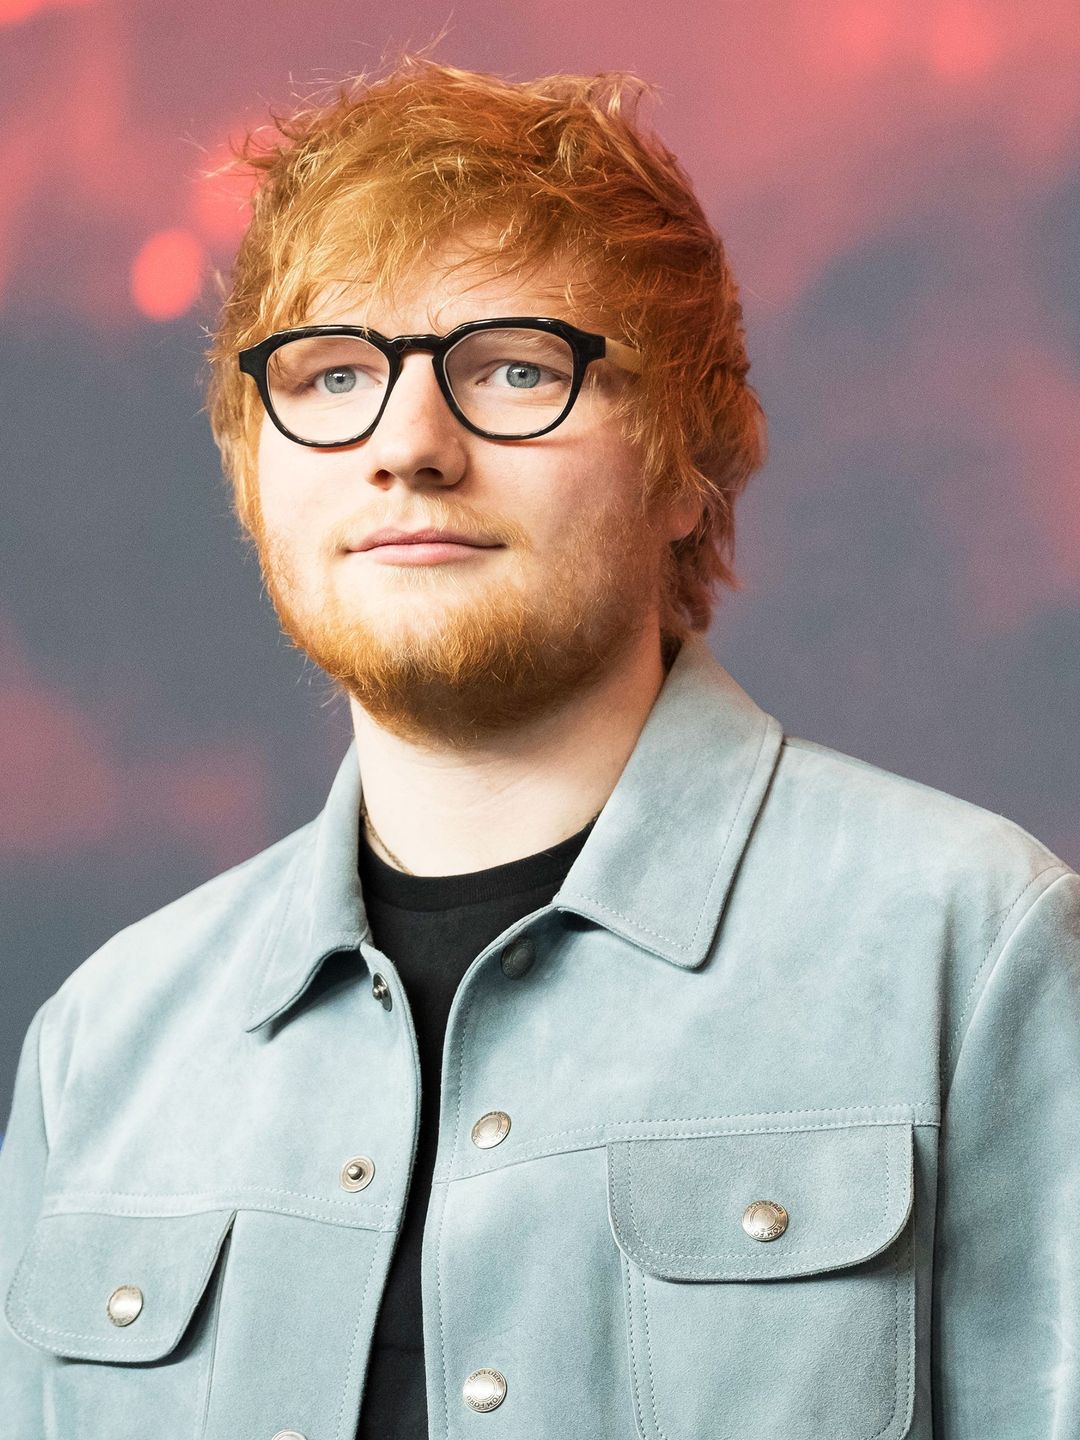 Ed Sheeran way to fame